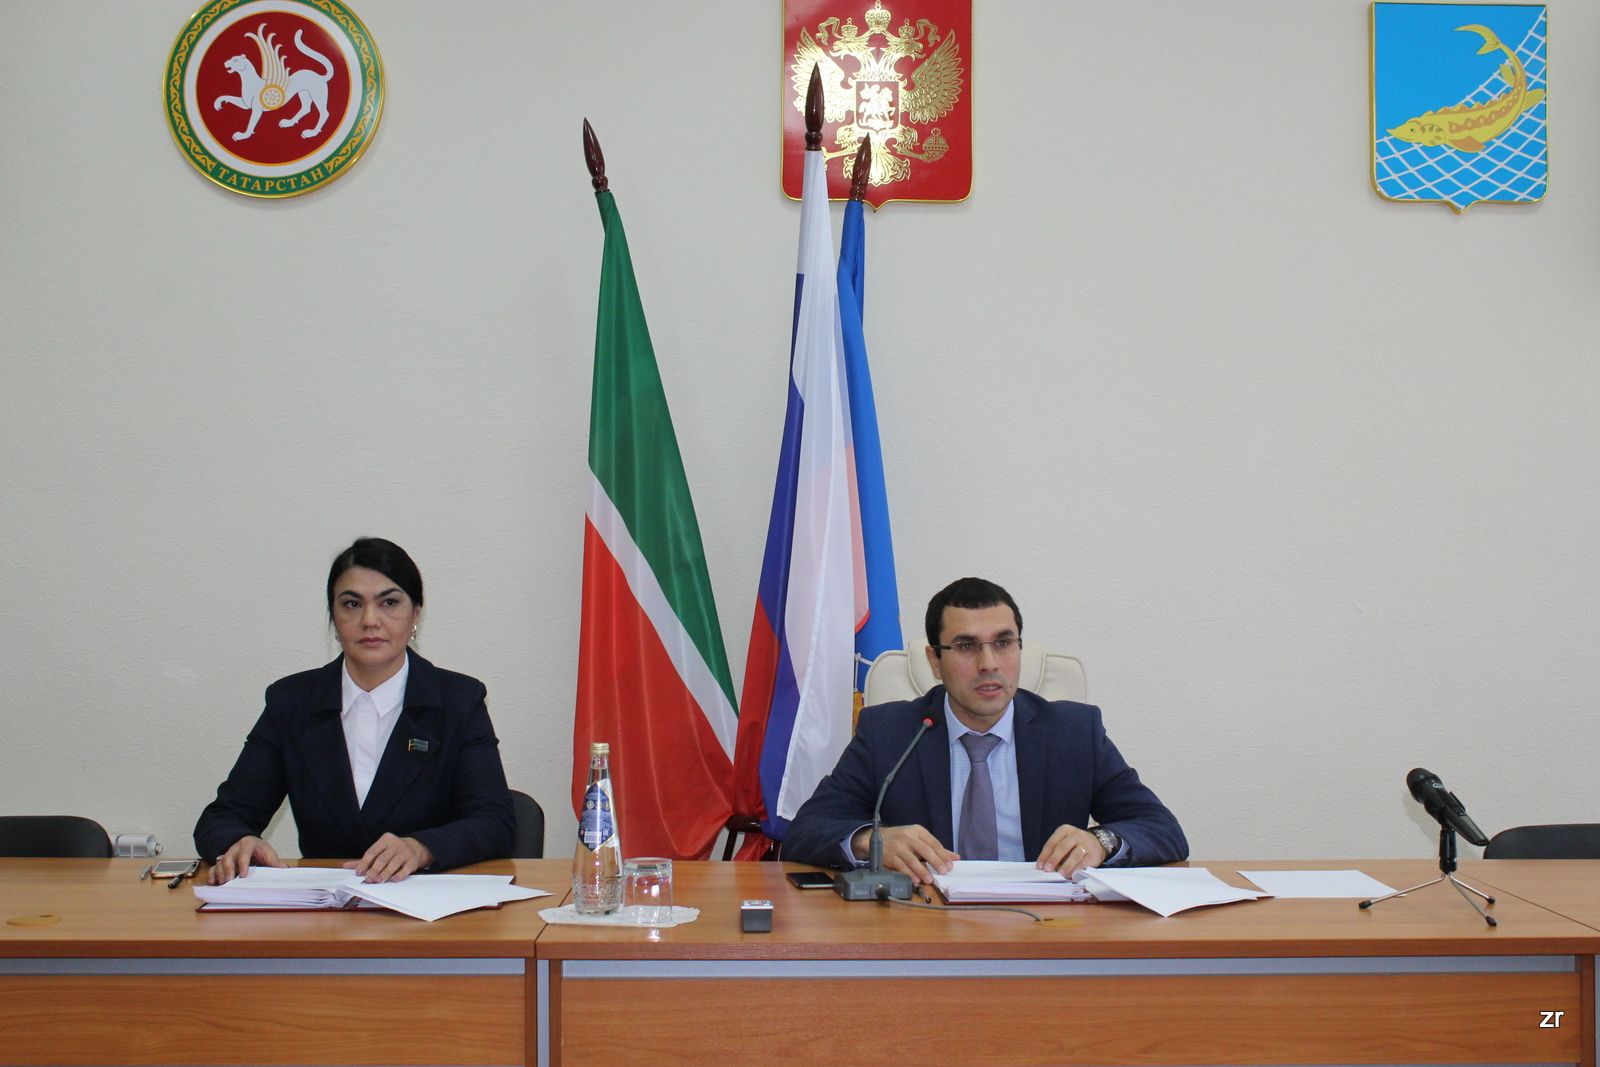 Вчера состоялось сорок седьмое заседание Совета Рыбно-Слободского муниципального района Республики Татарстан третьего созыва